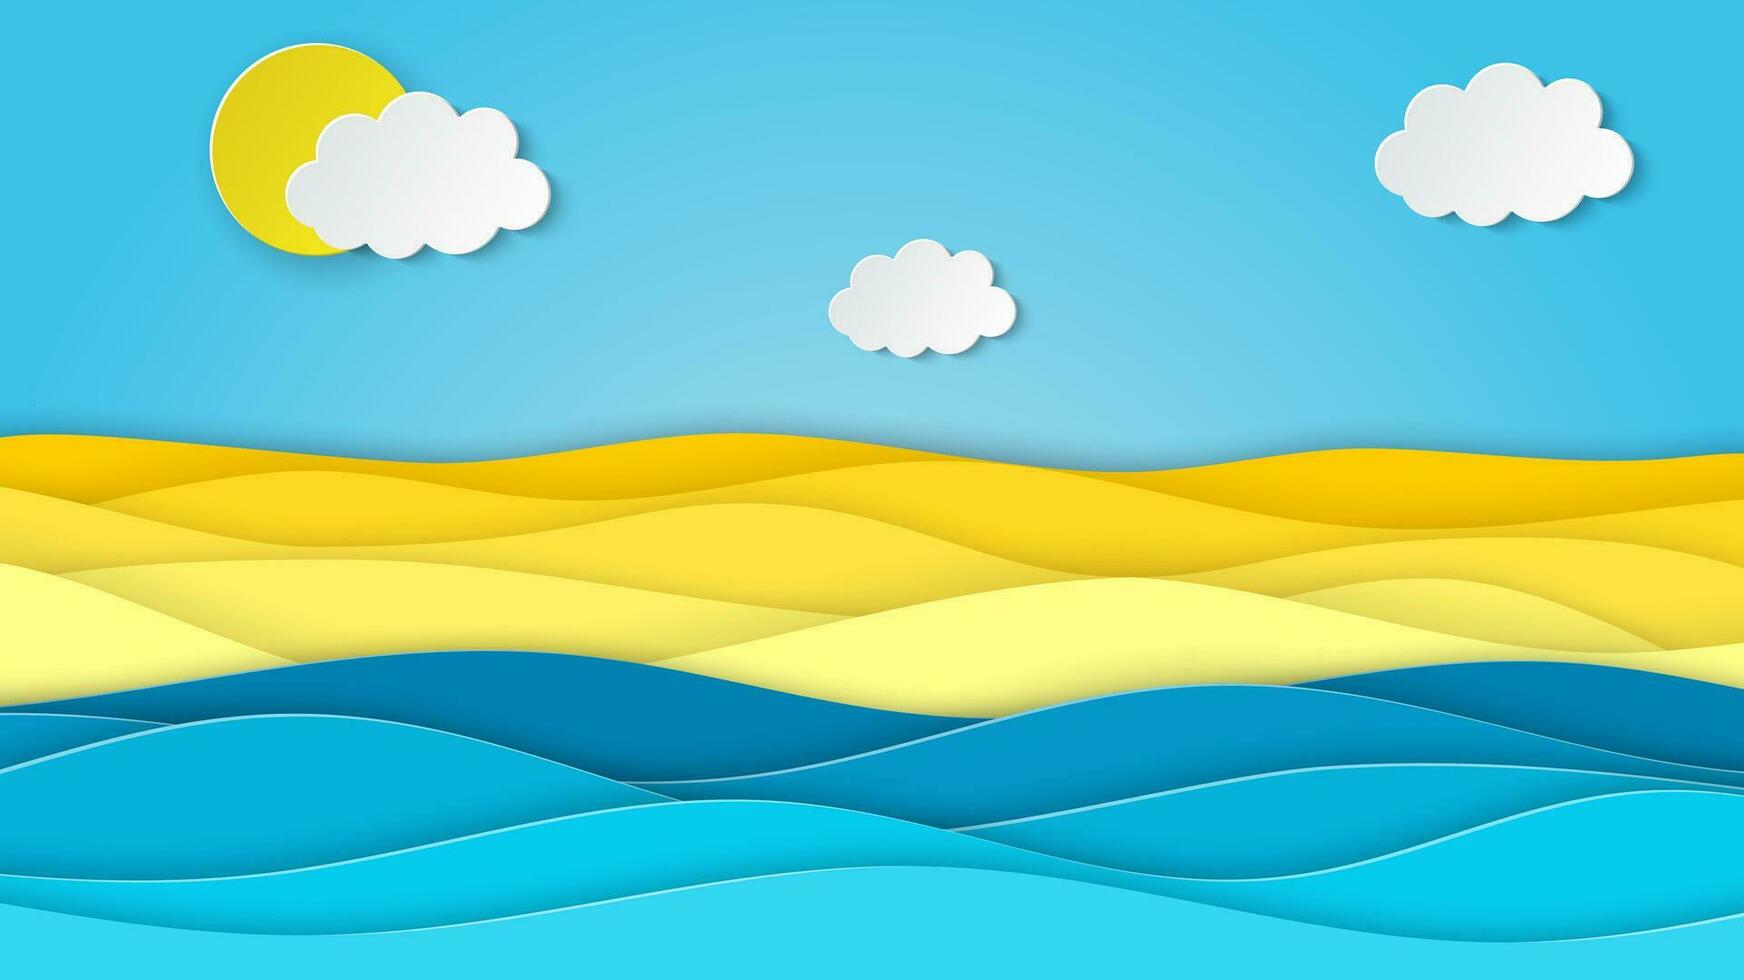 zee landschap met strand, golven, wolken. papier besnoeiing uit digitaal ambacht stijl. abstract blauw zee en strand zomer achtergrond met papier golven en zeekust. vector illustratie